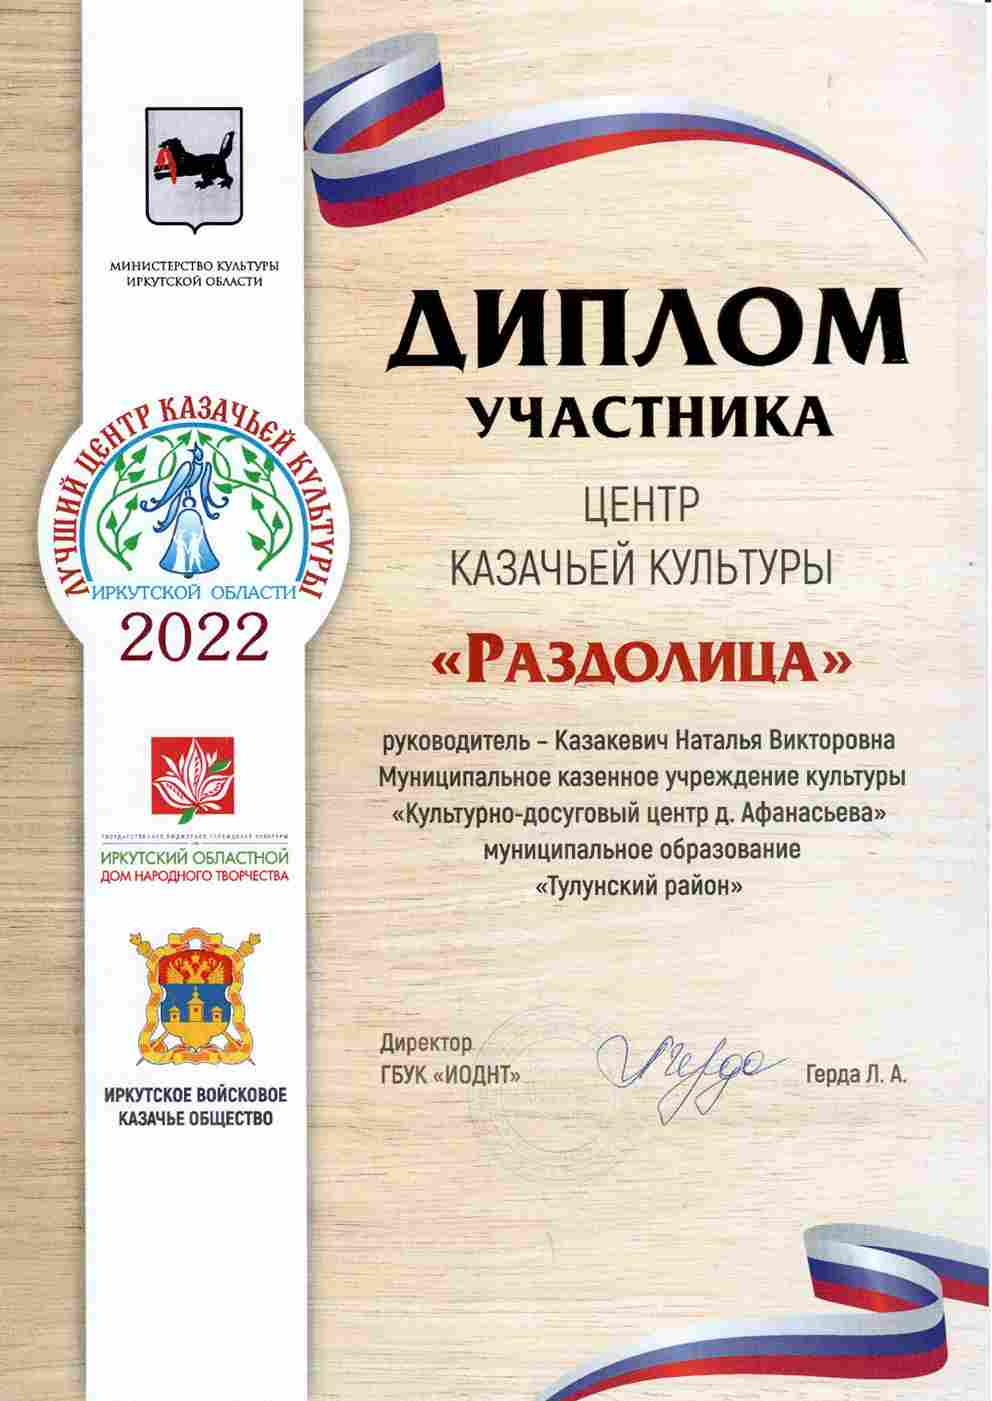 ЦКК «Раздолица» принял участие в первом областном конкурсе «Лучший центр казачьей культуры Иркутской области»